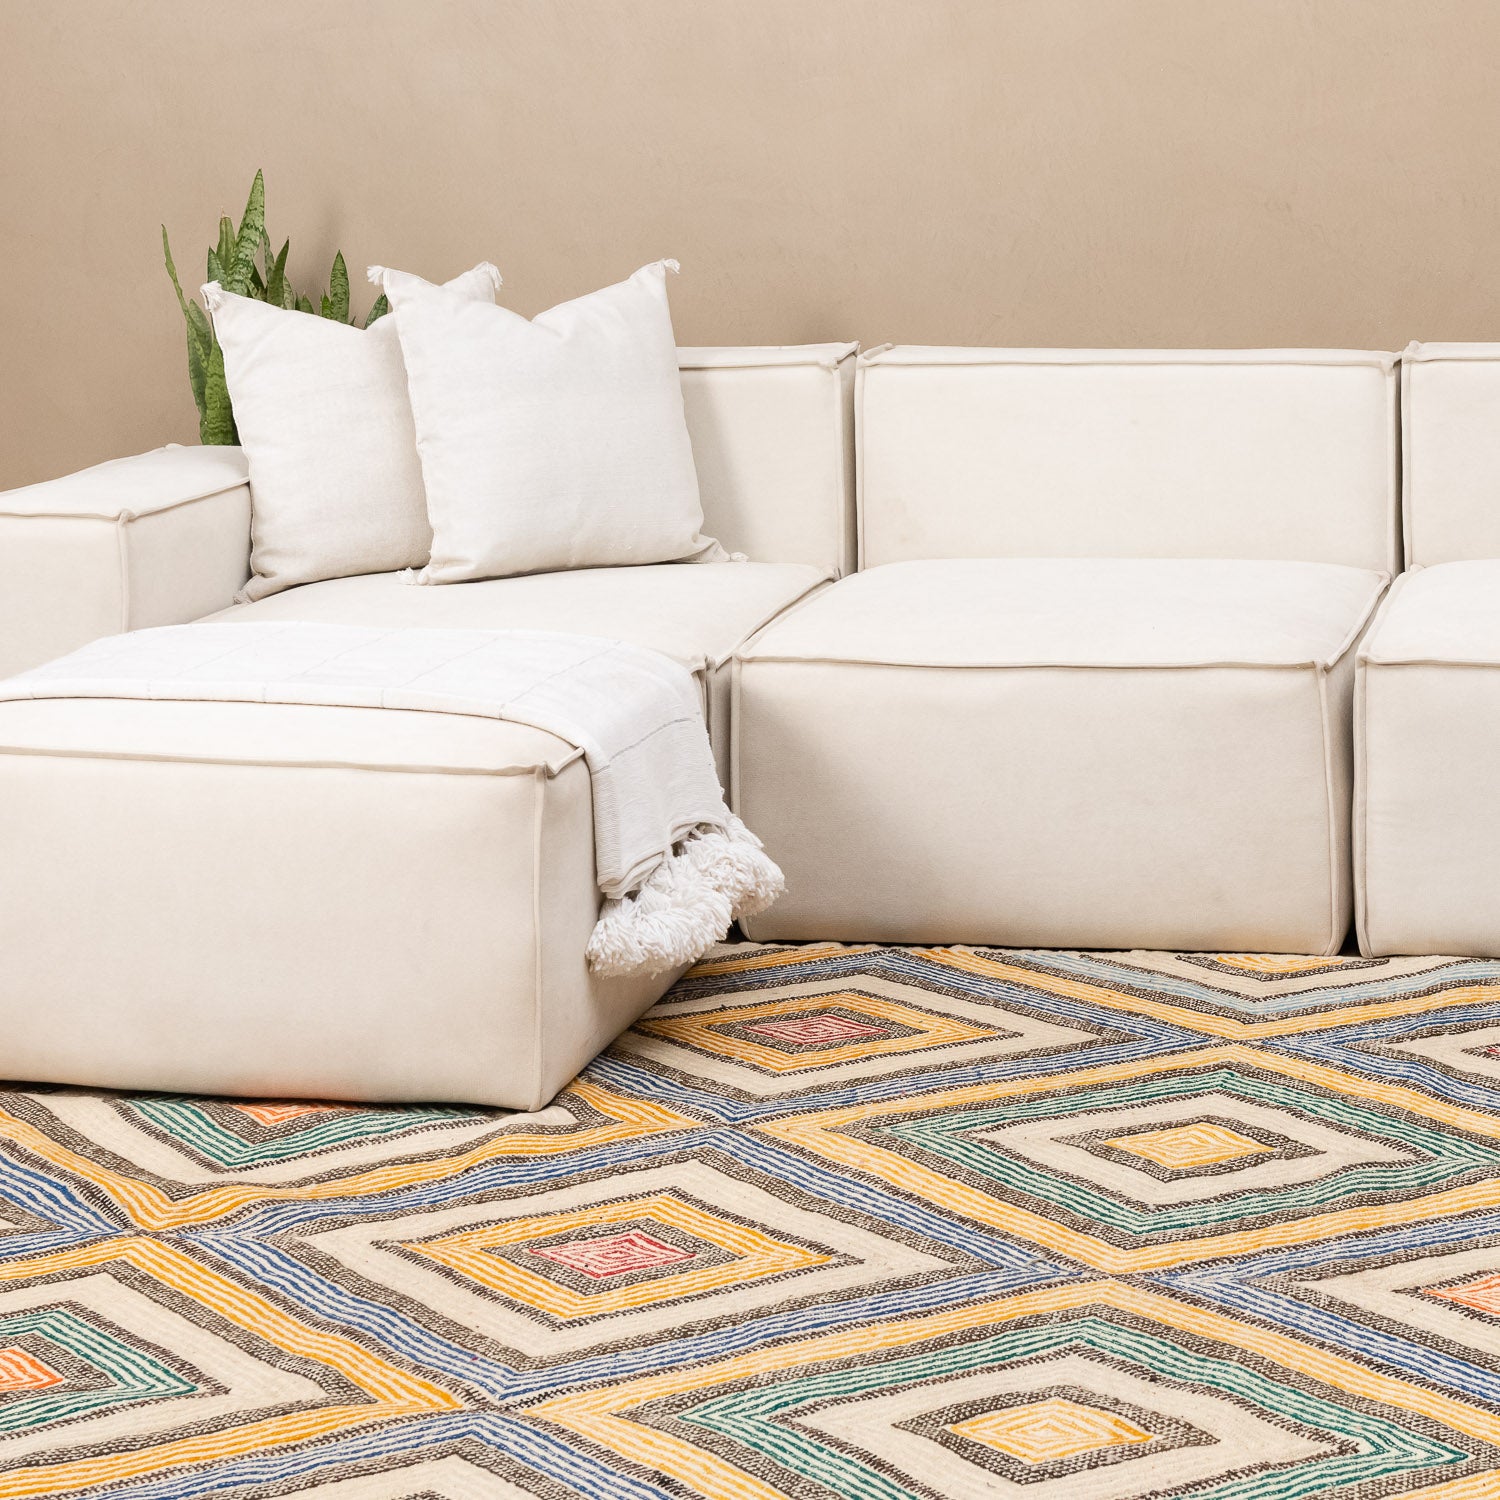 Talha - Flatweave Moroccan rug